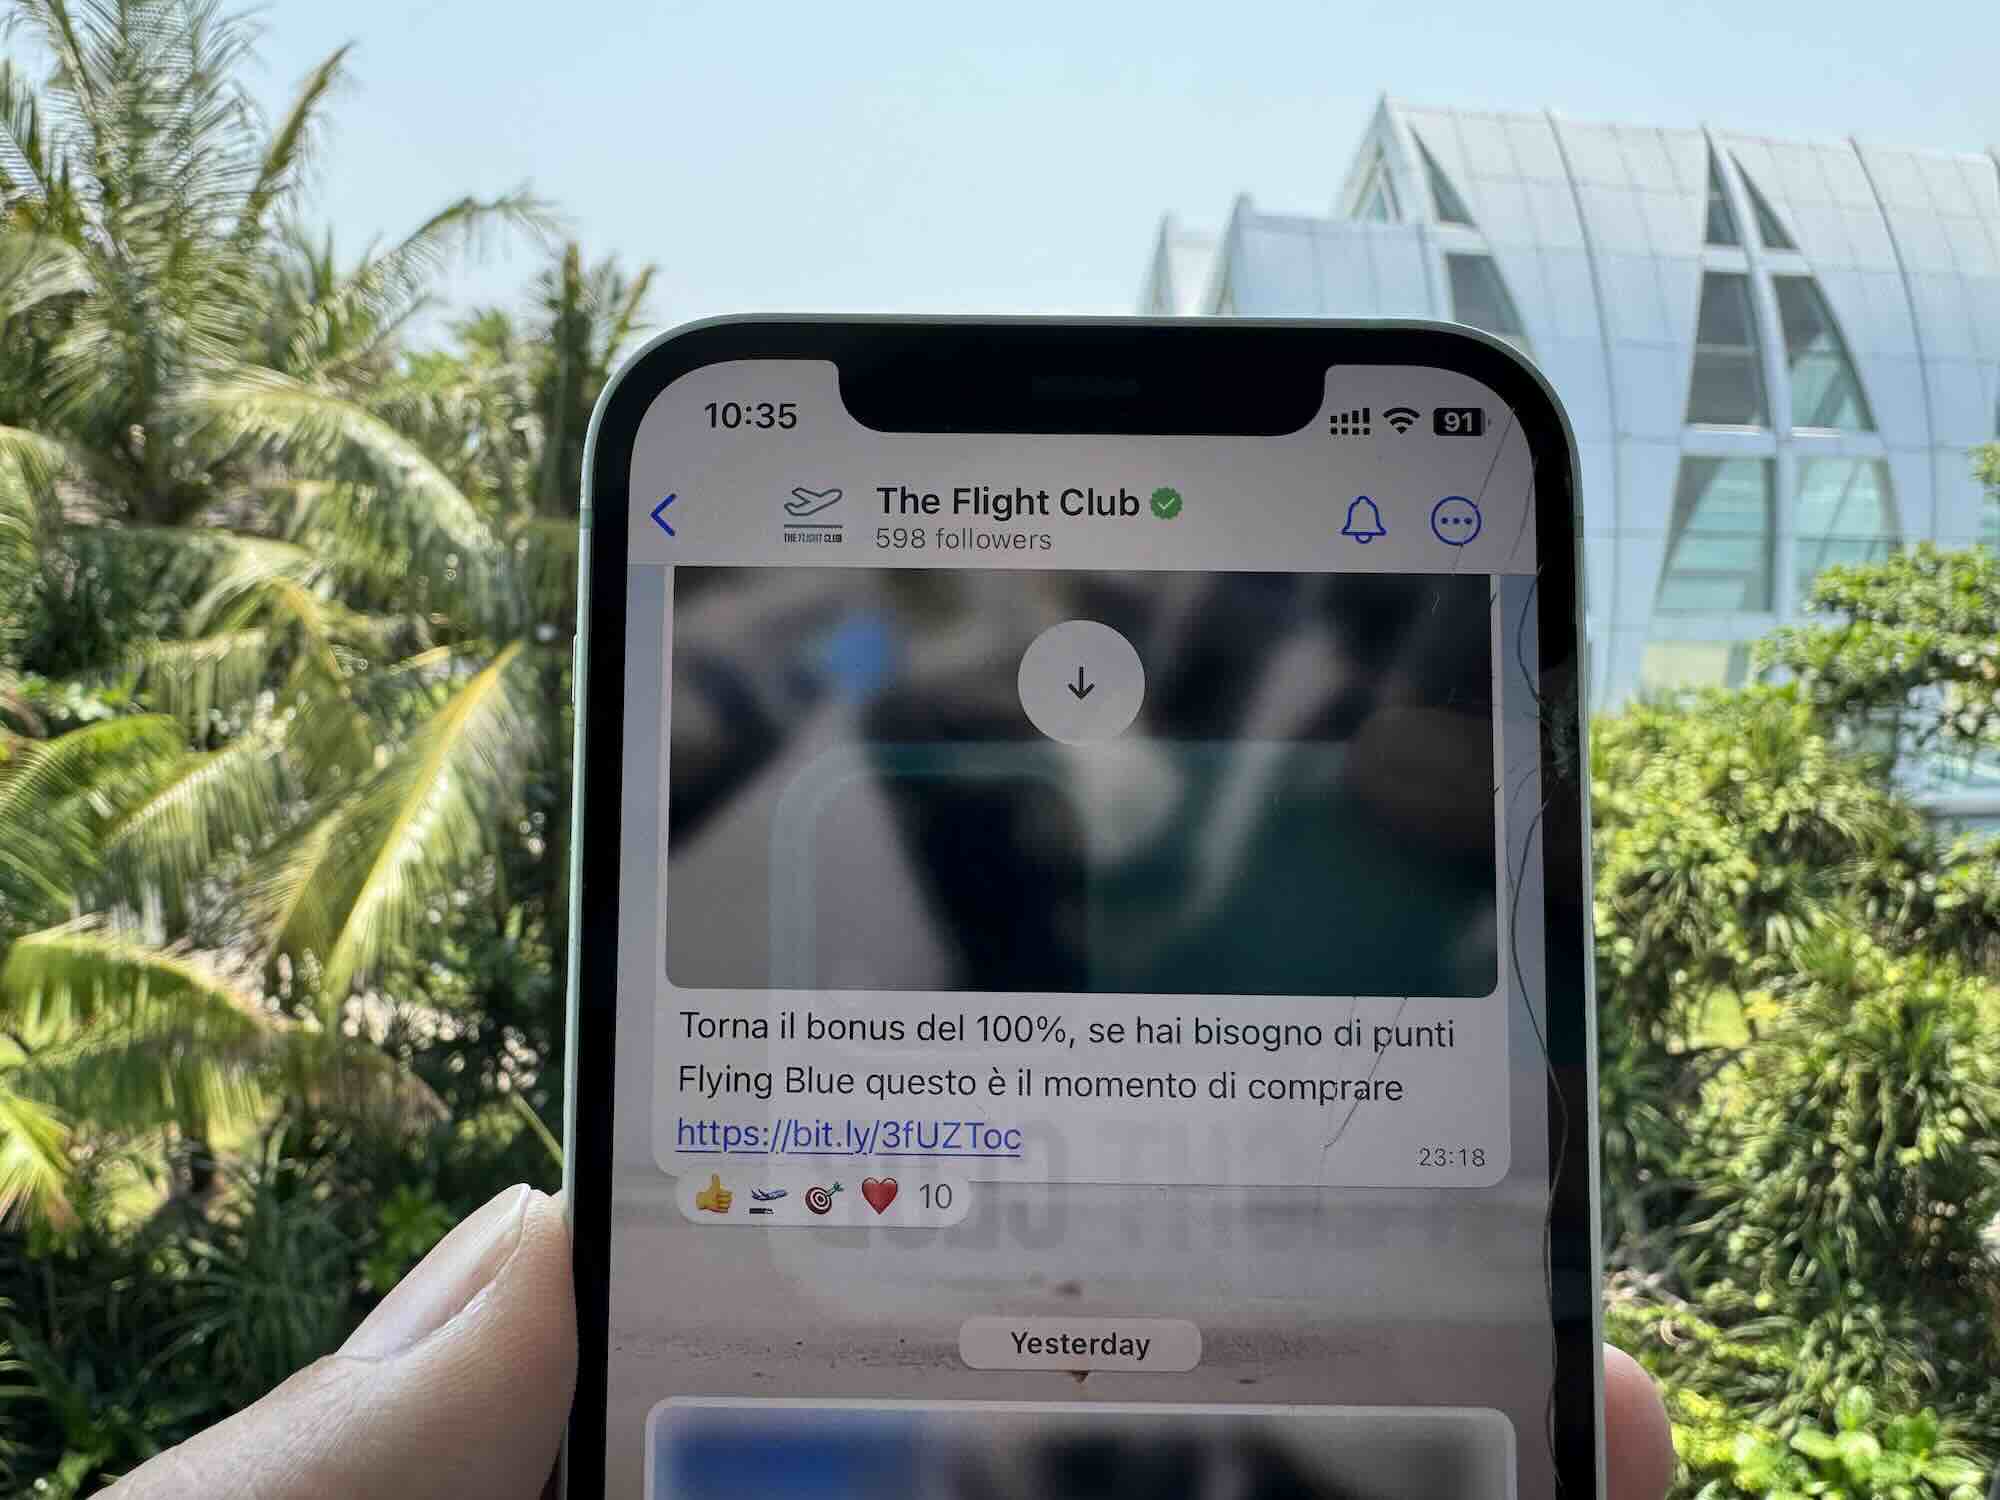 E’ arrivato il canale whatsapp di The Flight Club. Iscriviti per ricevere breaking news, error fare e offerte imperdibili